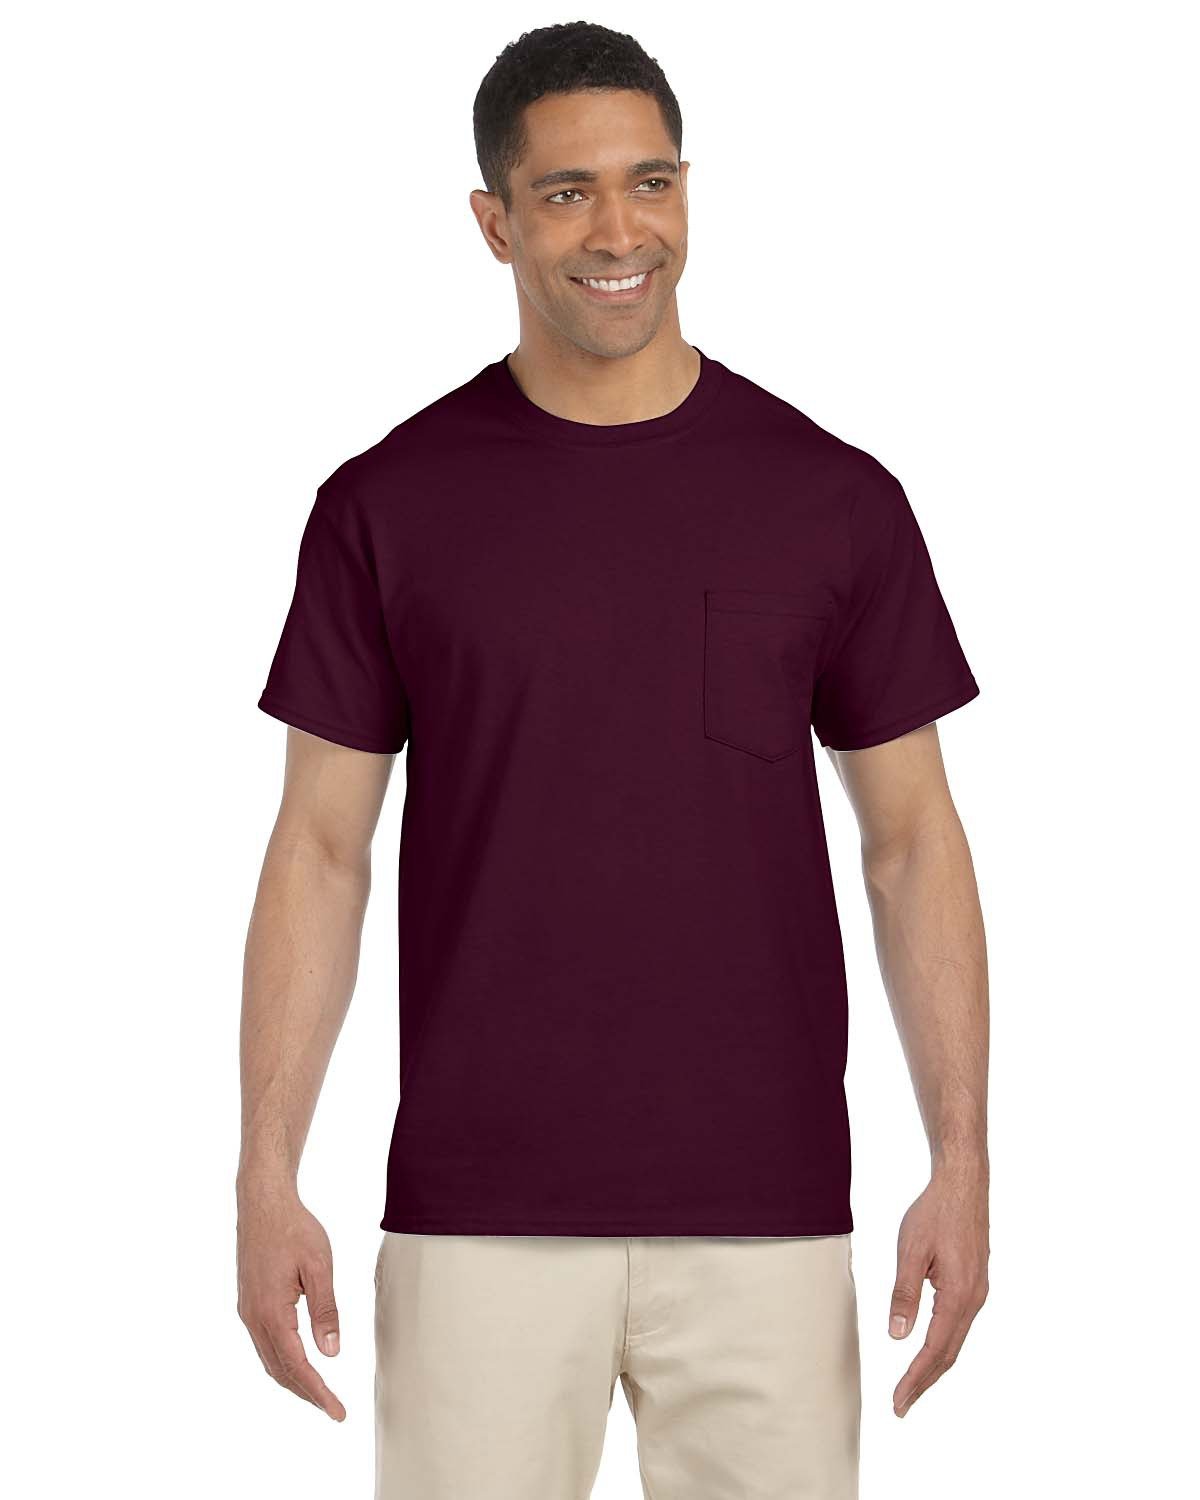 maroon raglan shirt